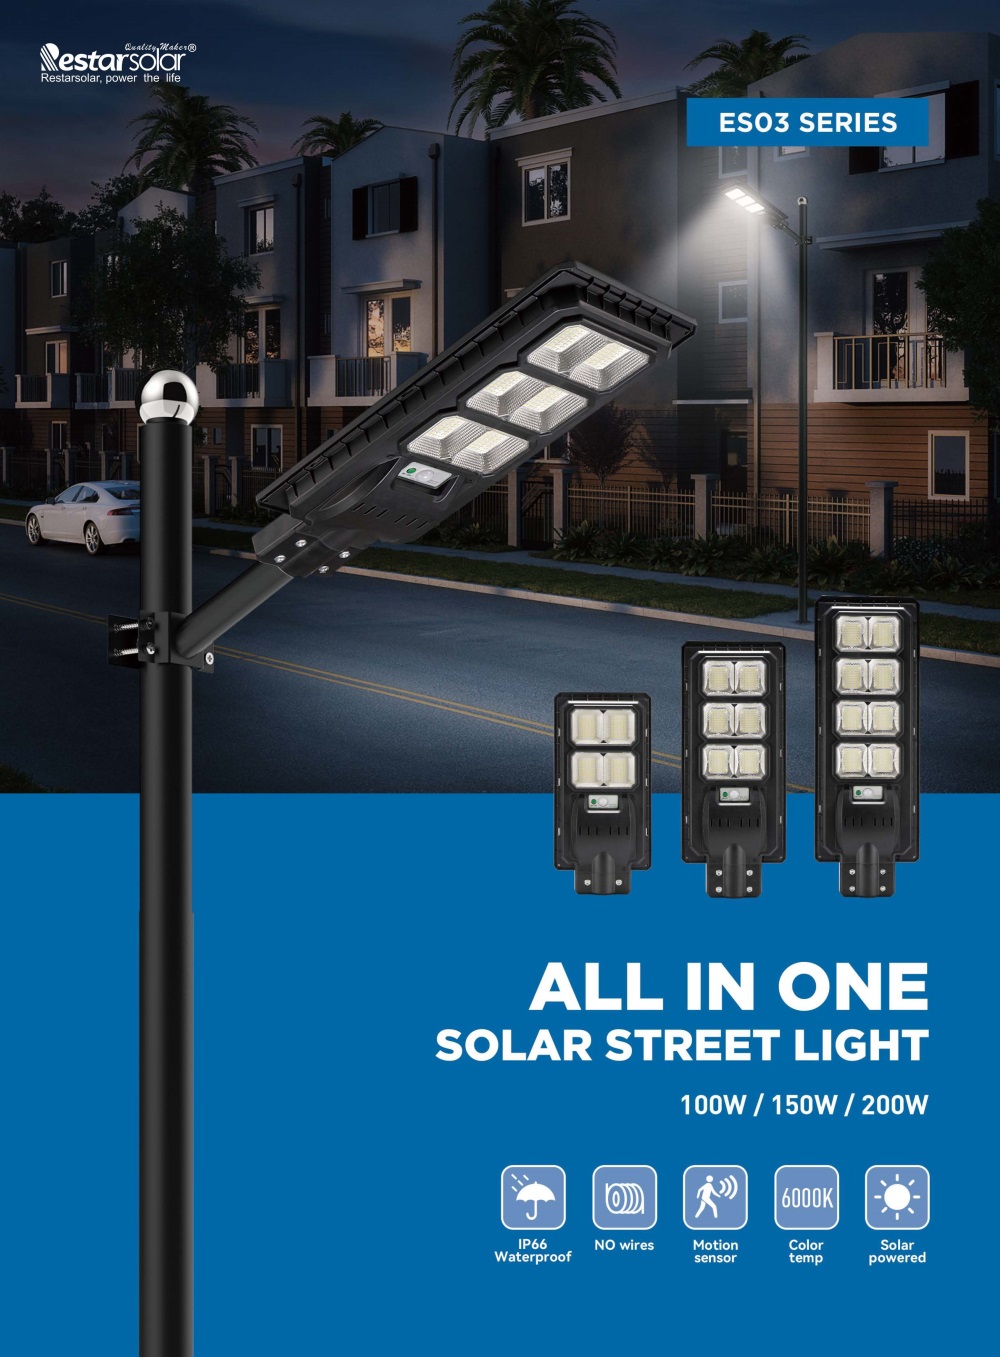 ALL IN ONE SOLAR STREET LIGHT 100W / 150W / 200W